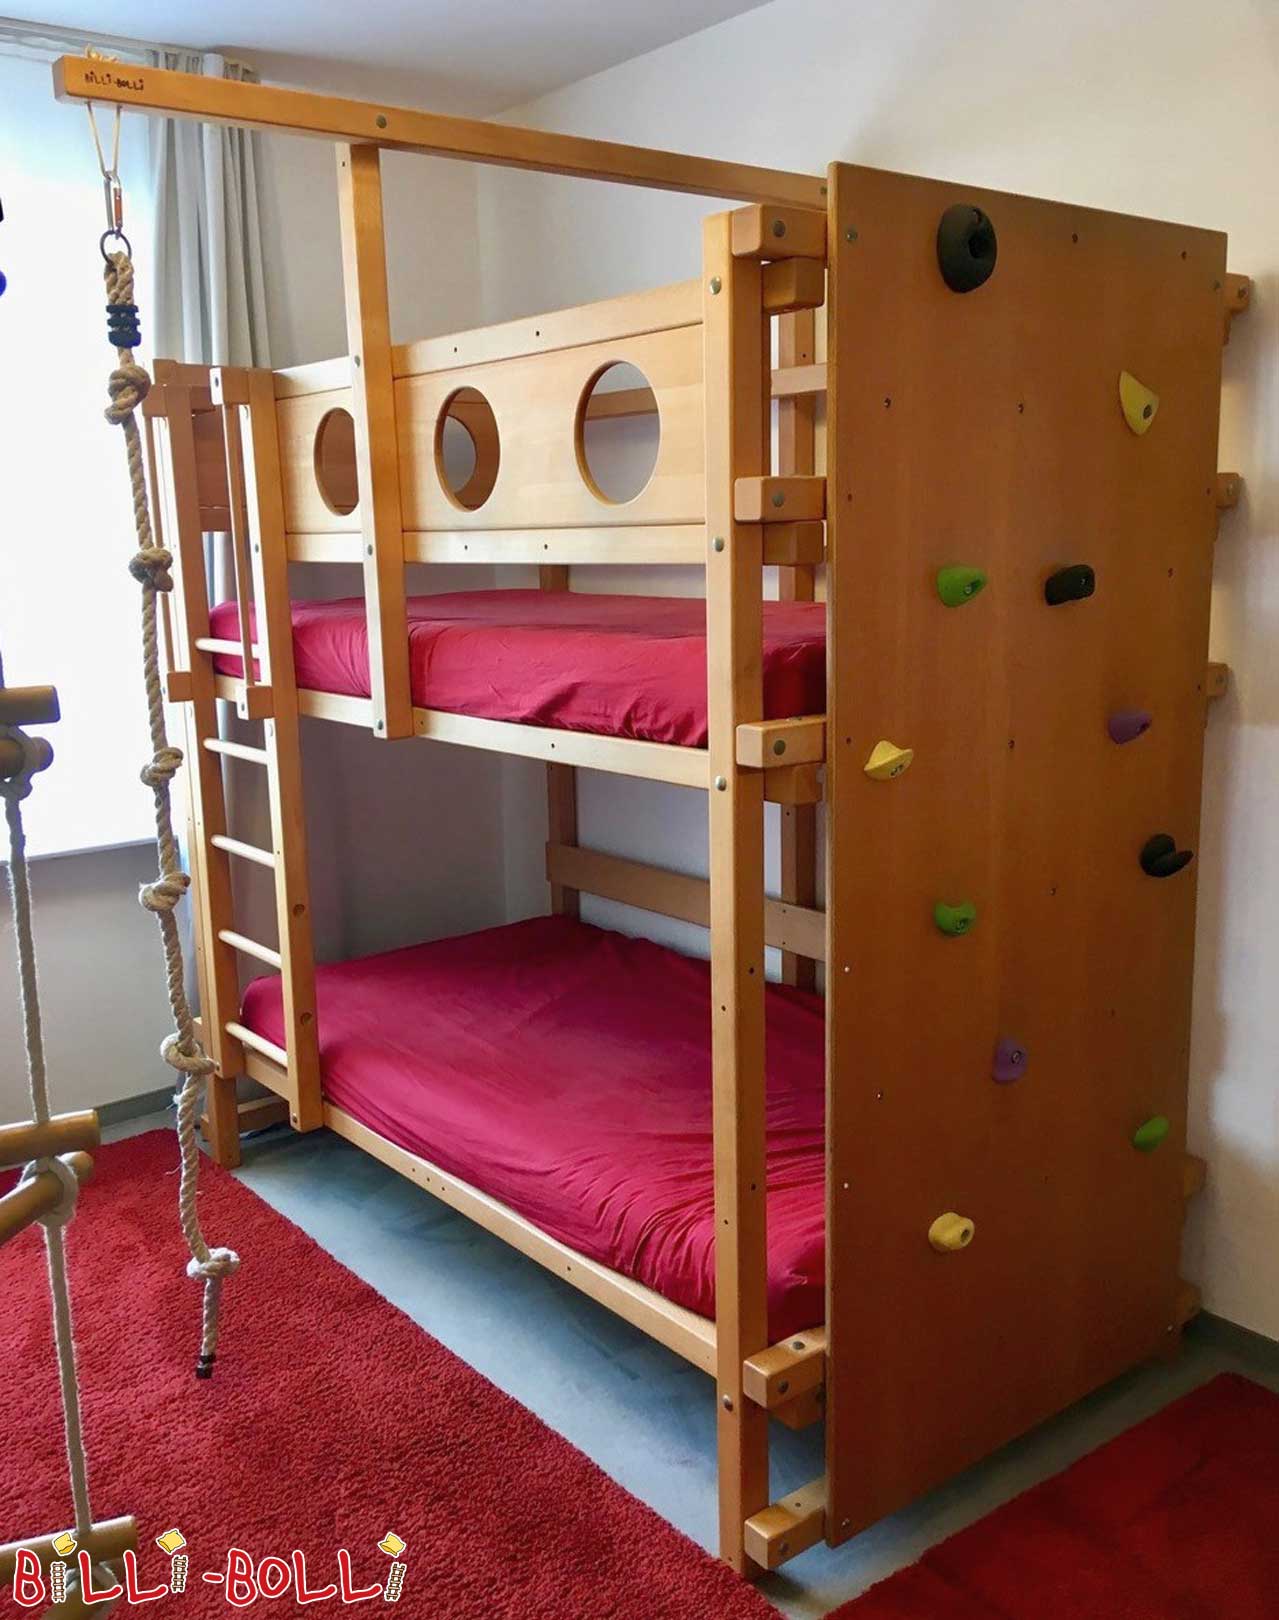 Billi Bolli dviaukštė lova su nuotykių žaidimų bokštu Miunchene (Kategorija: Naudojama dviaukštė lova)